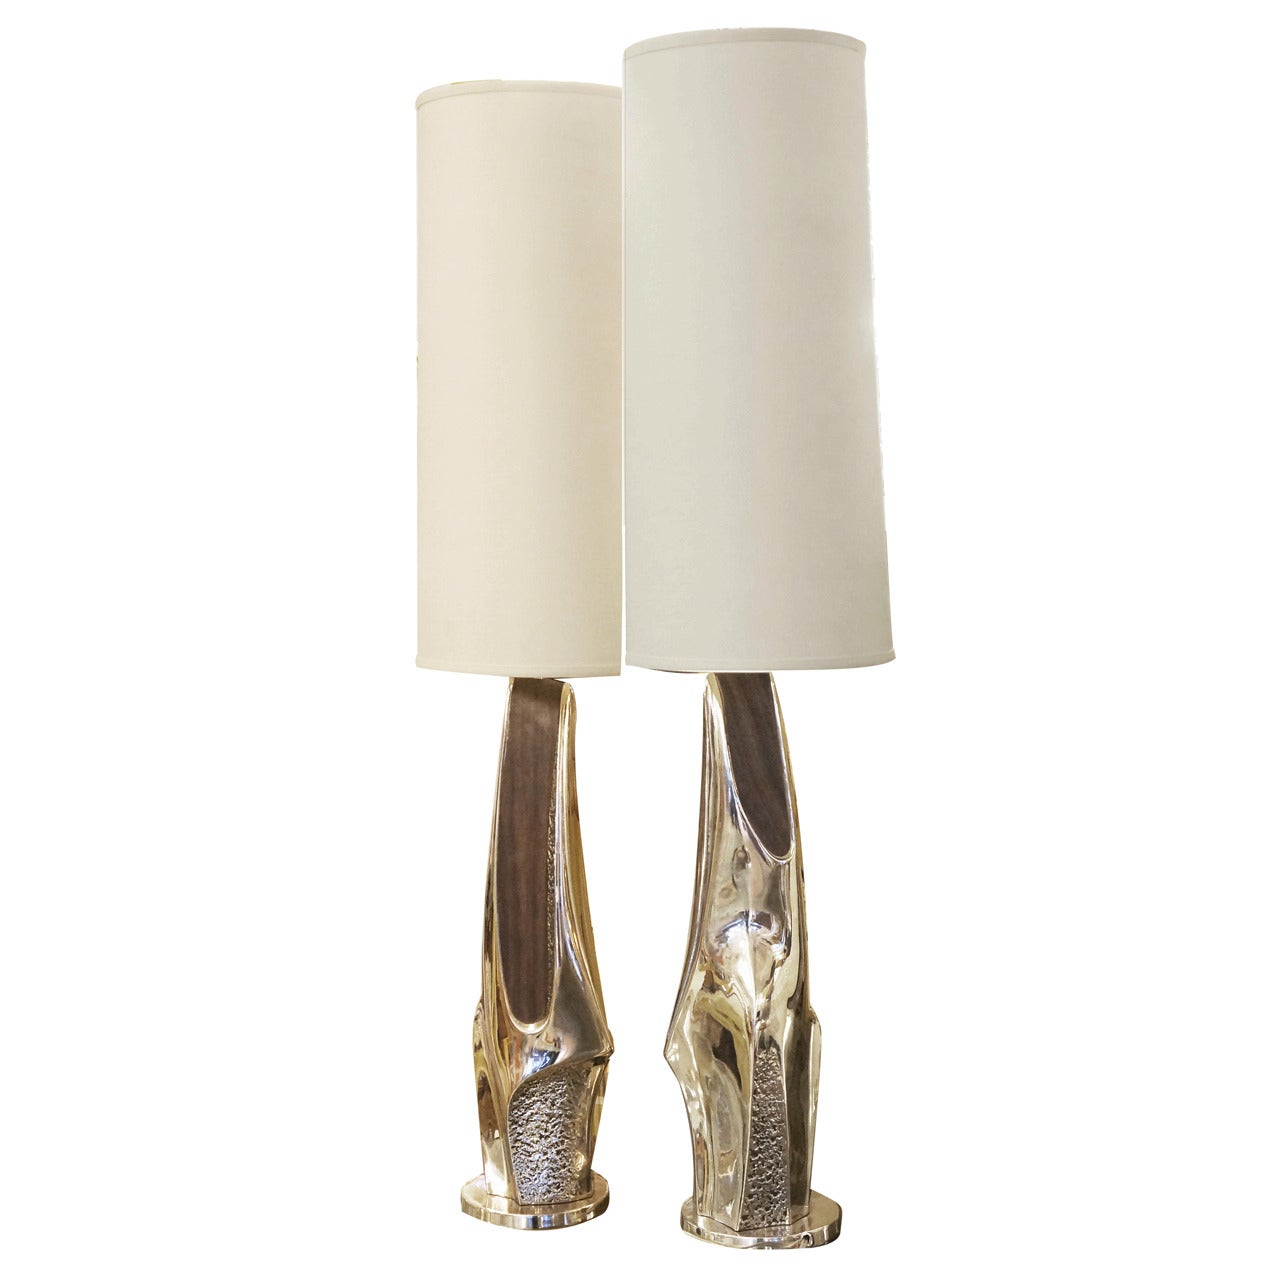 Pair of Brutalist Nickel-Plated and Wood Veneer Table Lamps by Laurel